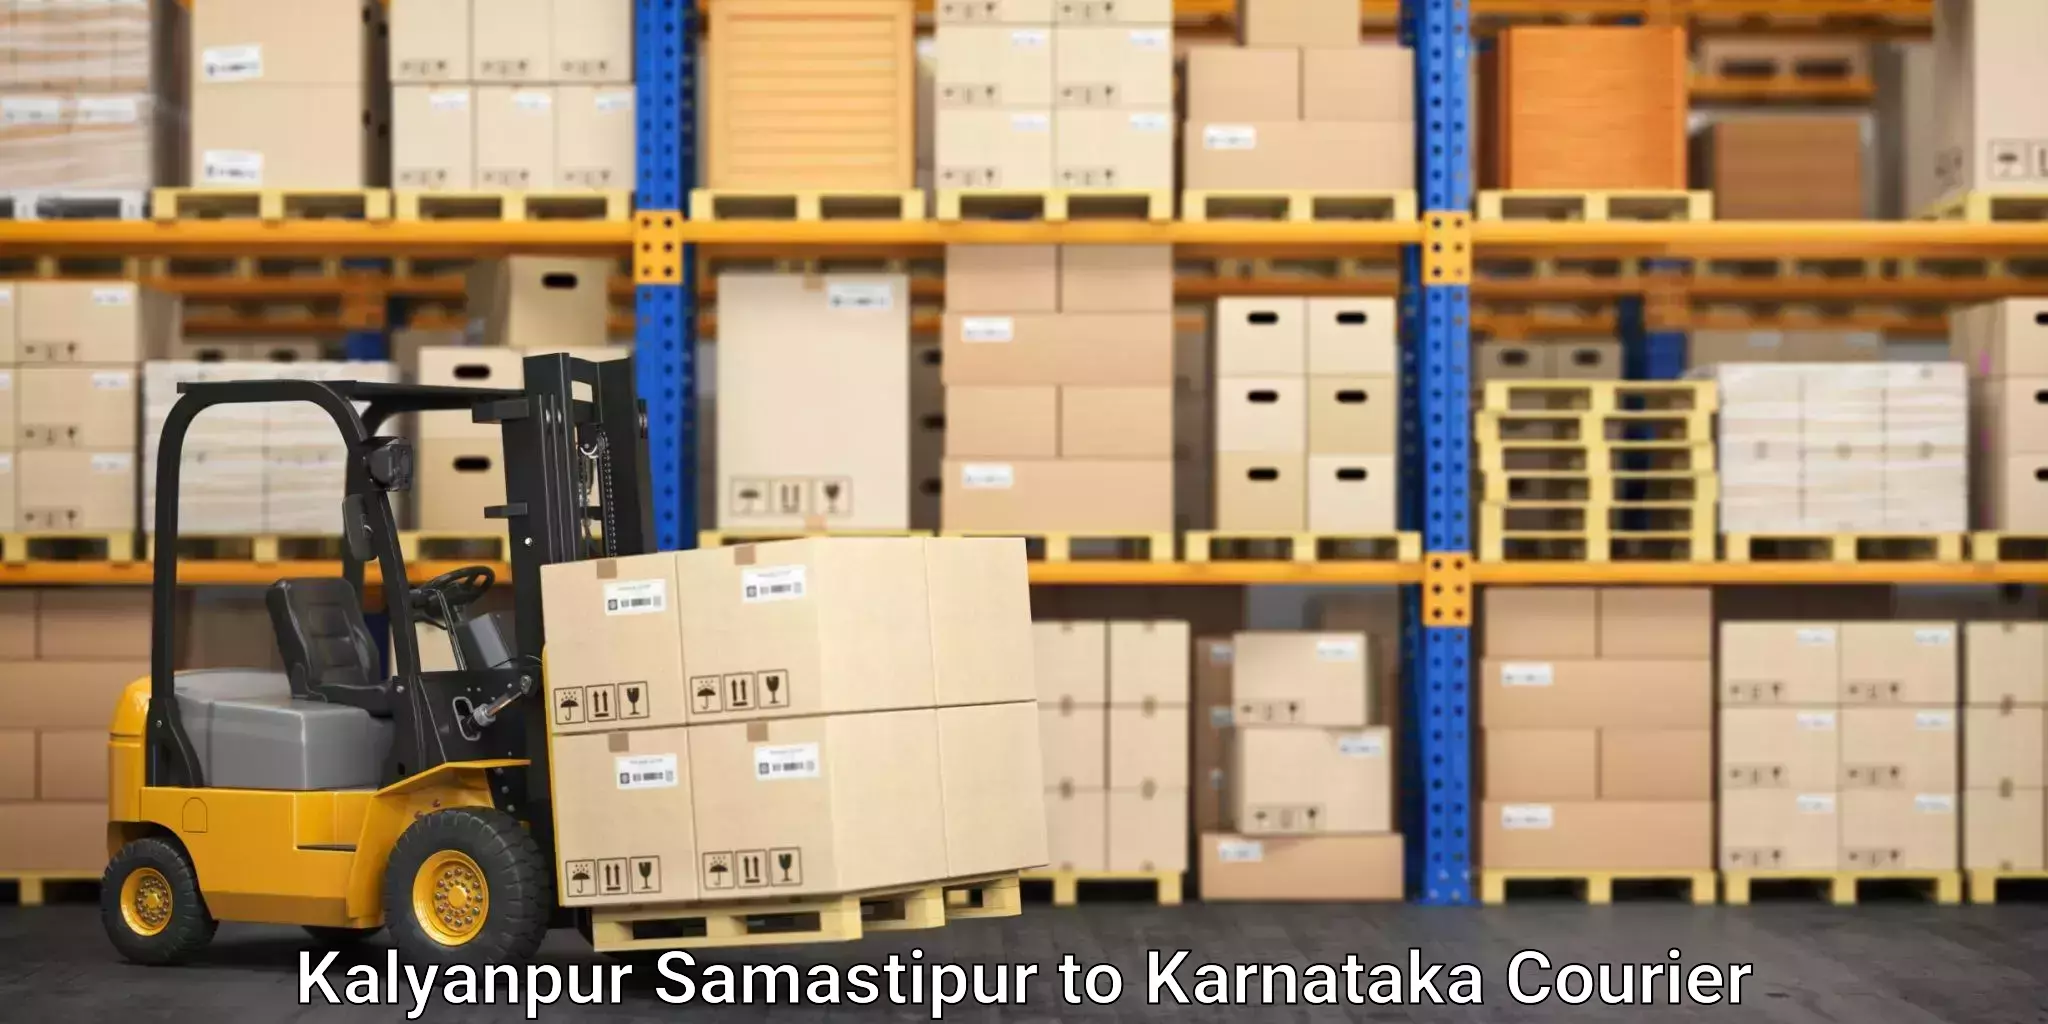 Professional goods transport Kalyanpur Samastipur to Kanjarakatte